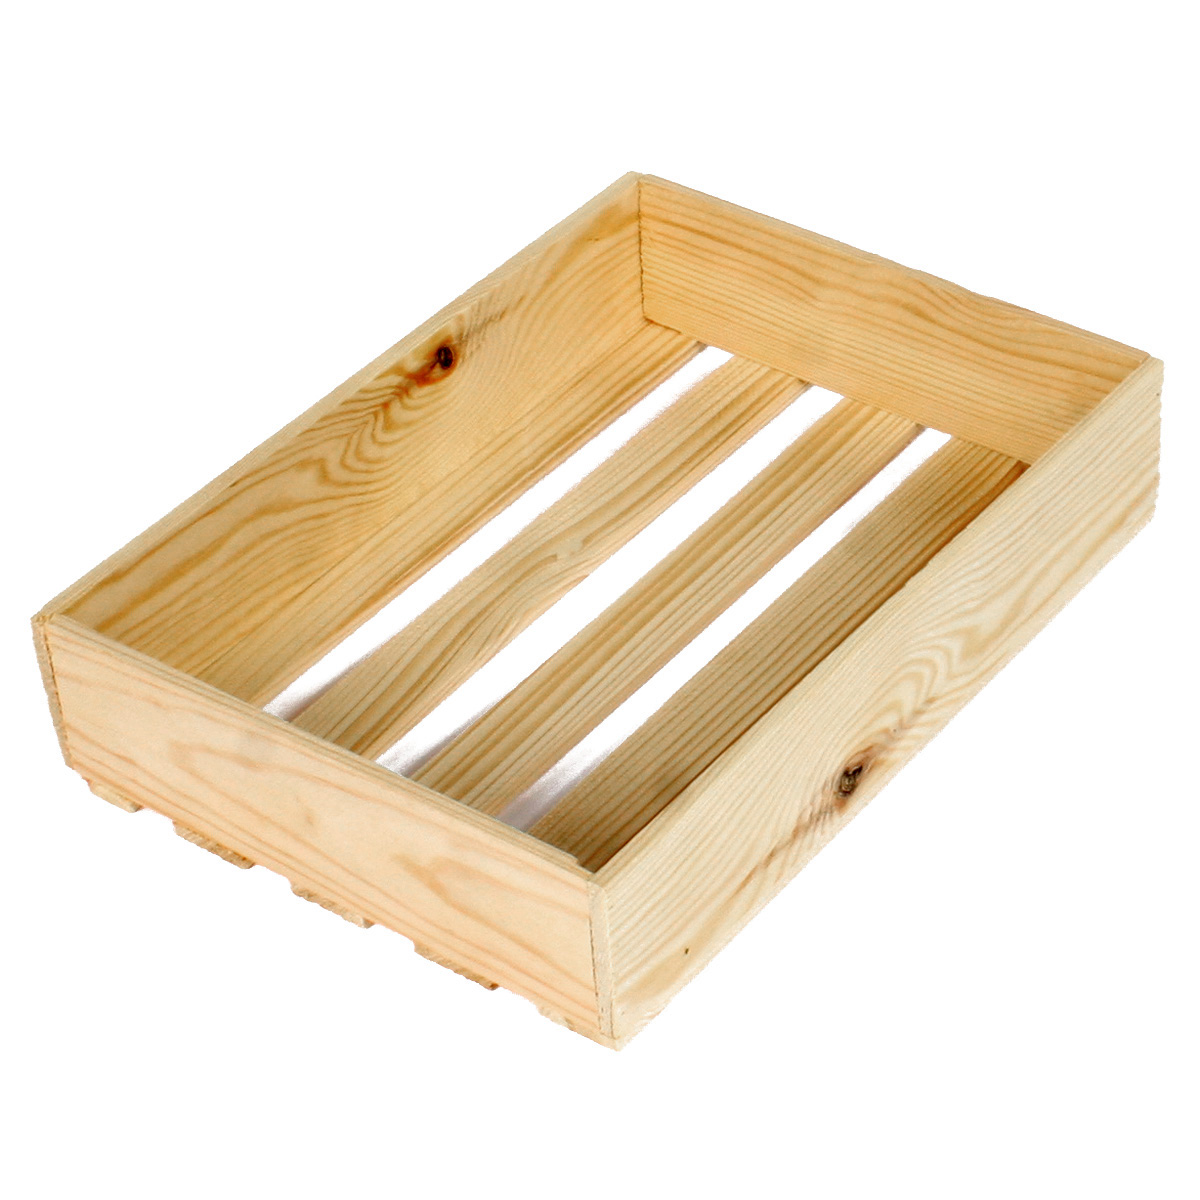 Коробка деревянная Grand Gift 120 прямоугольная 28х20х6 см подарочная коробка с отделением для сладостей подарочных наборов цветочных композиций